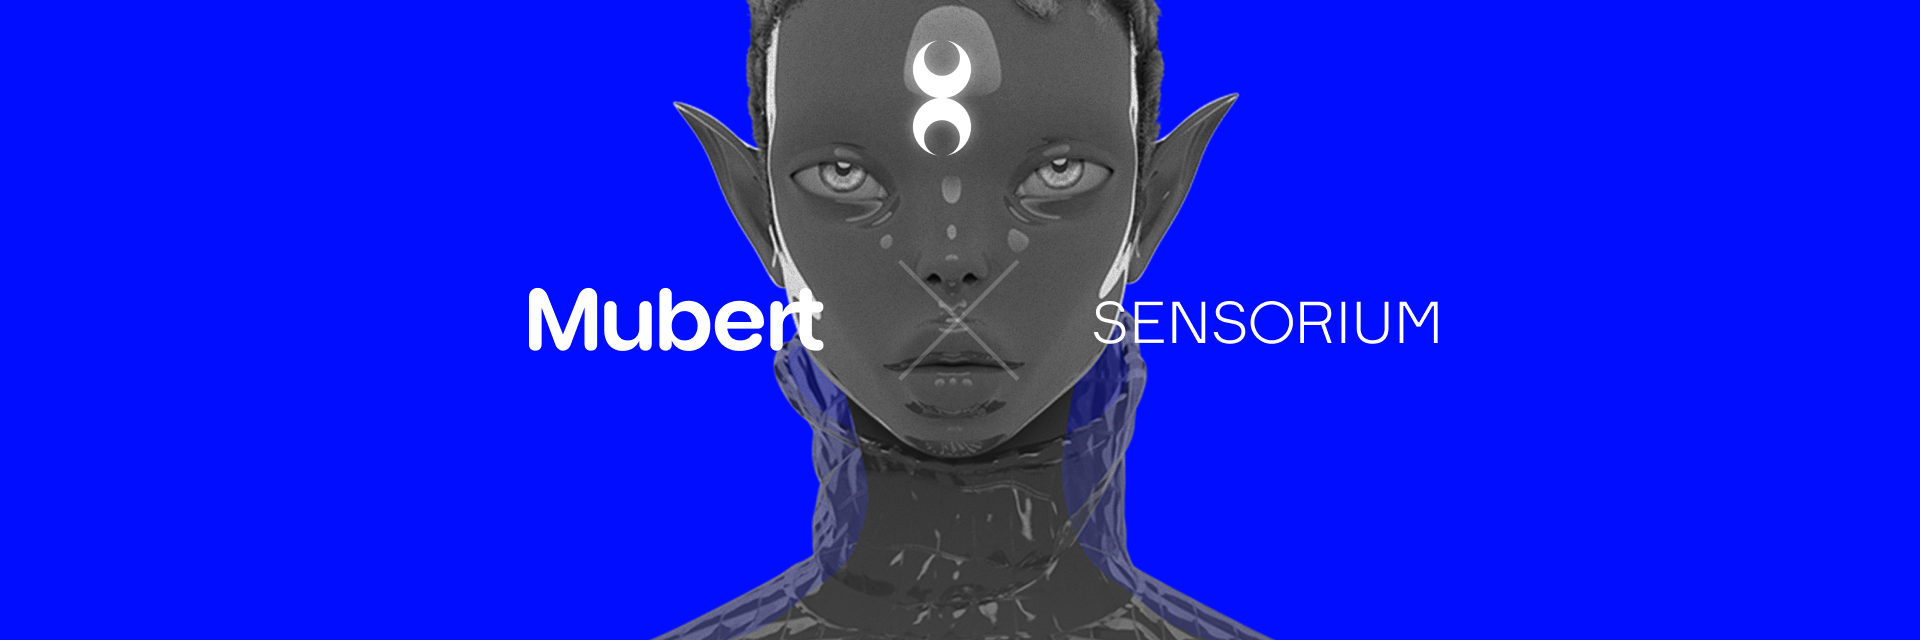 Mubert x Sensorium: next night AI DJ gonna save my life â€” Mubert Blog